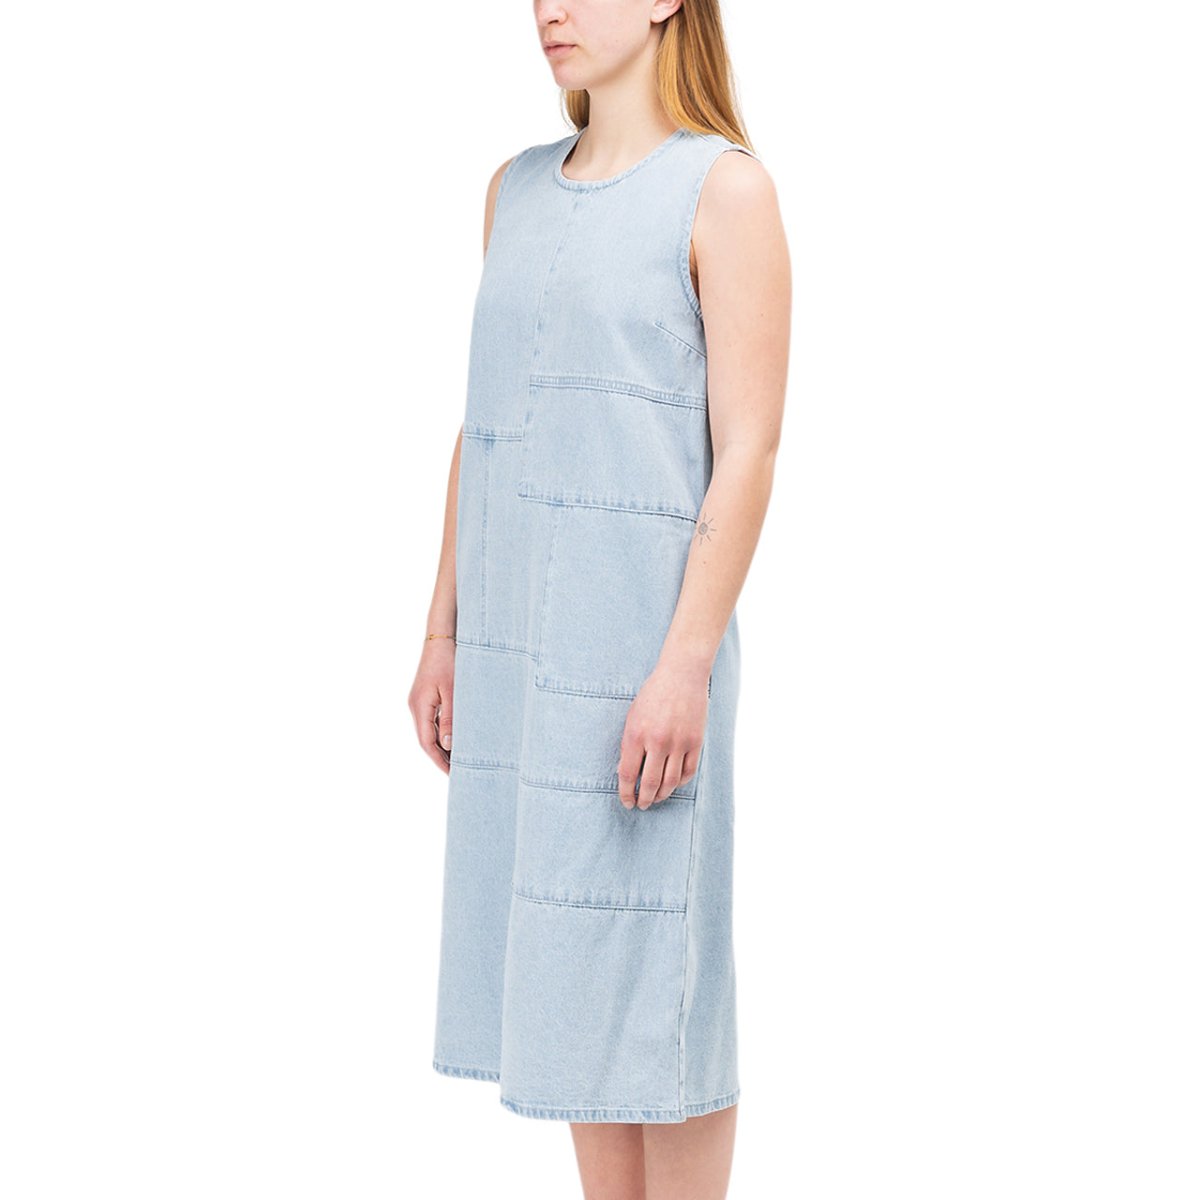 Stüssy WMNS Webster Dress (Hellblau)  - Allike Store